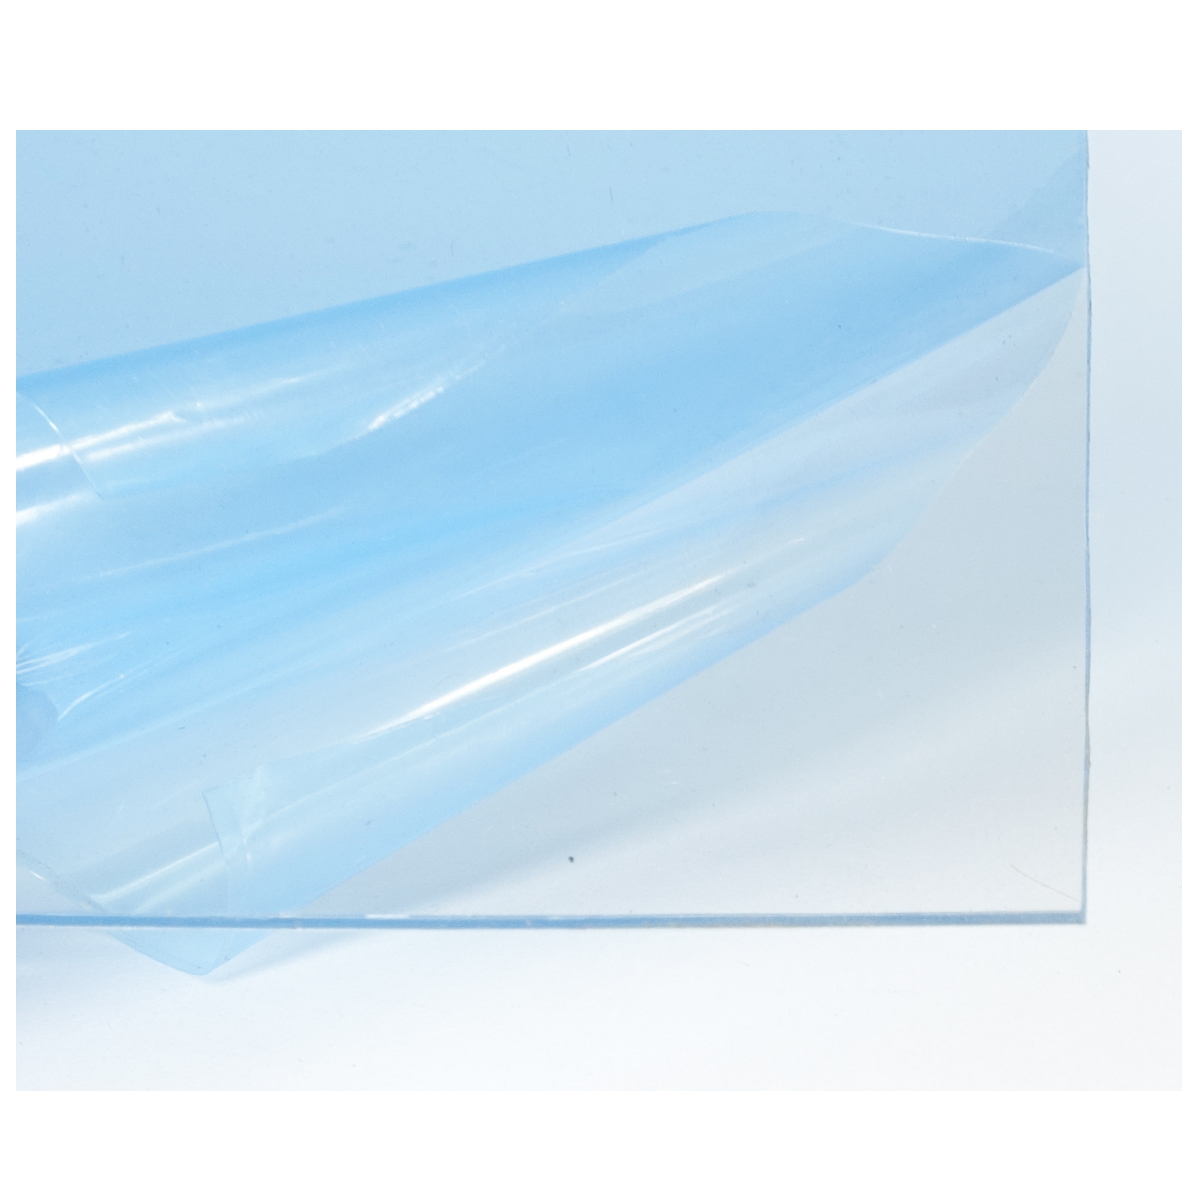 Transparente Petg Lámina de Plástico Construcción Maquetas Ventanas & Vidriado 